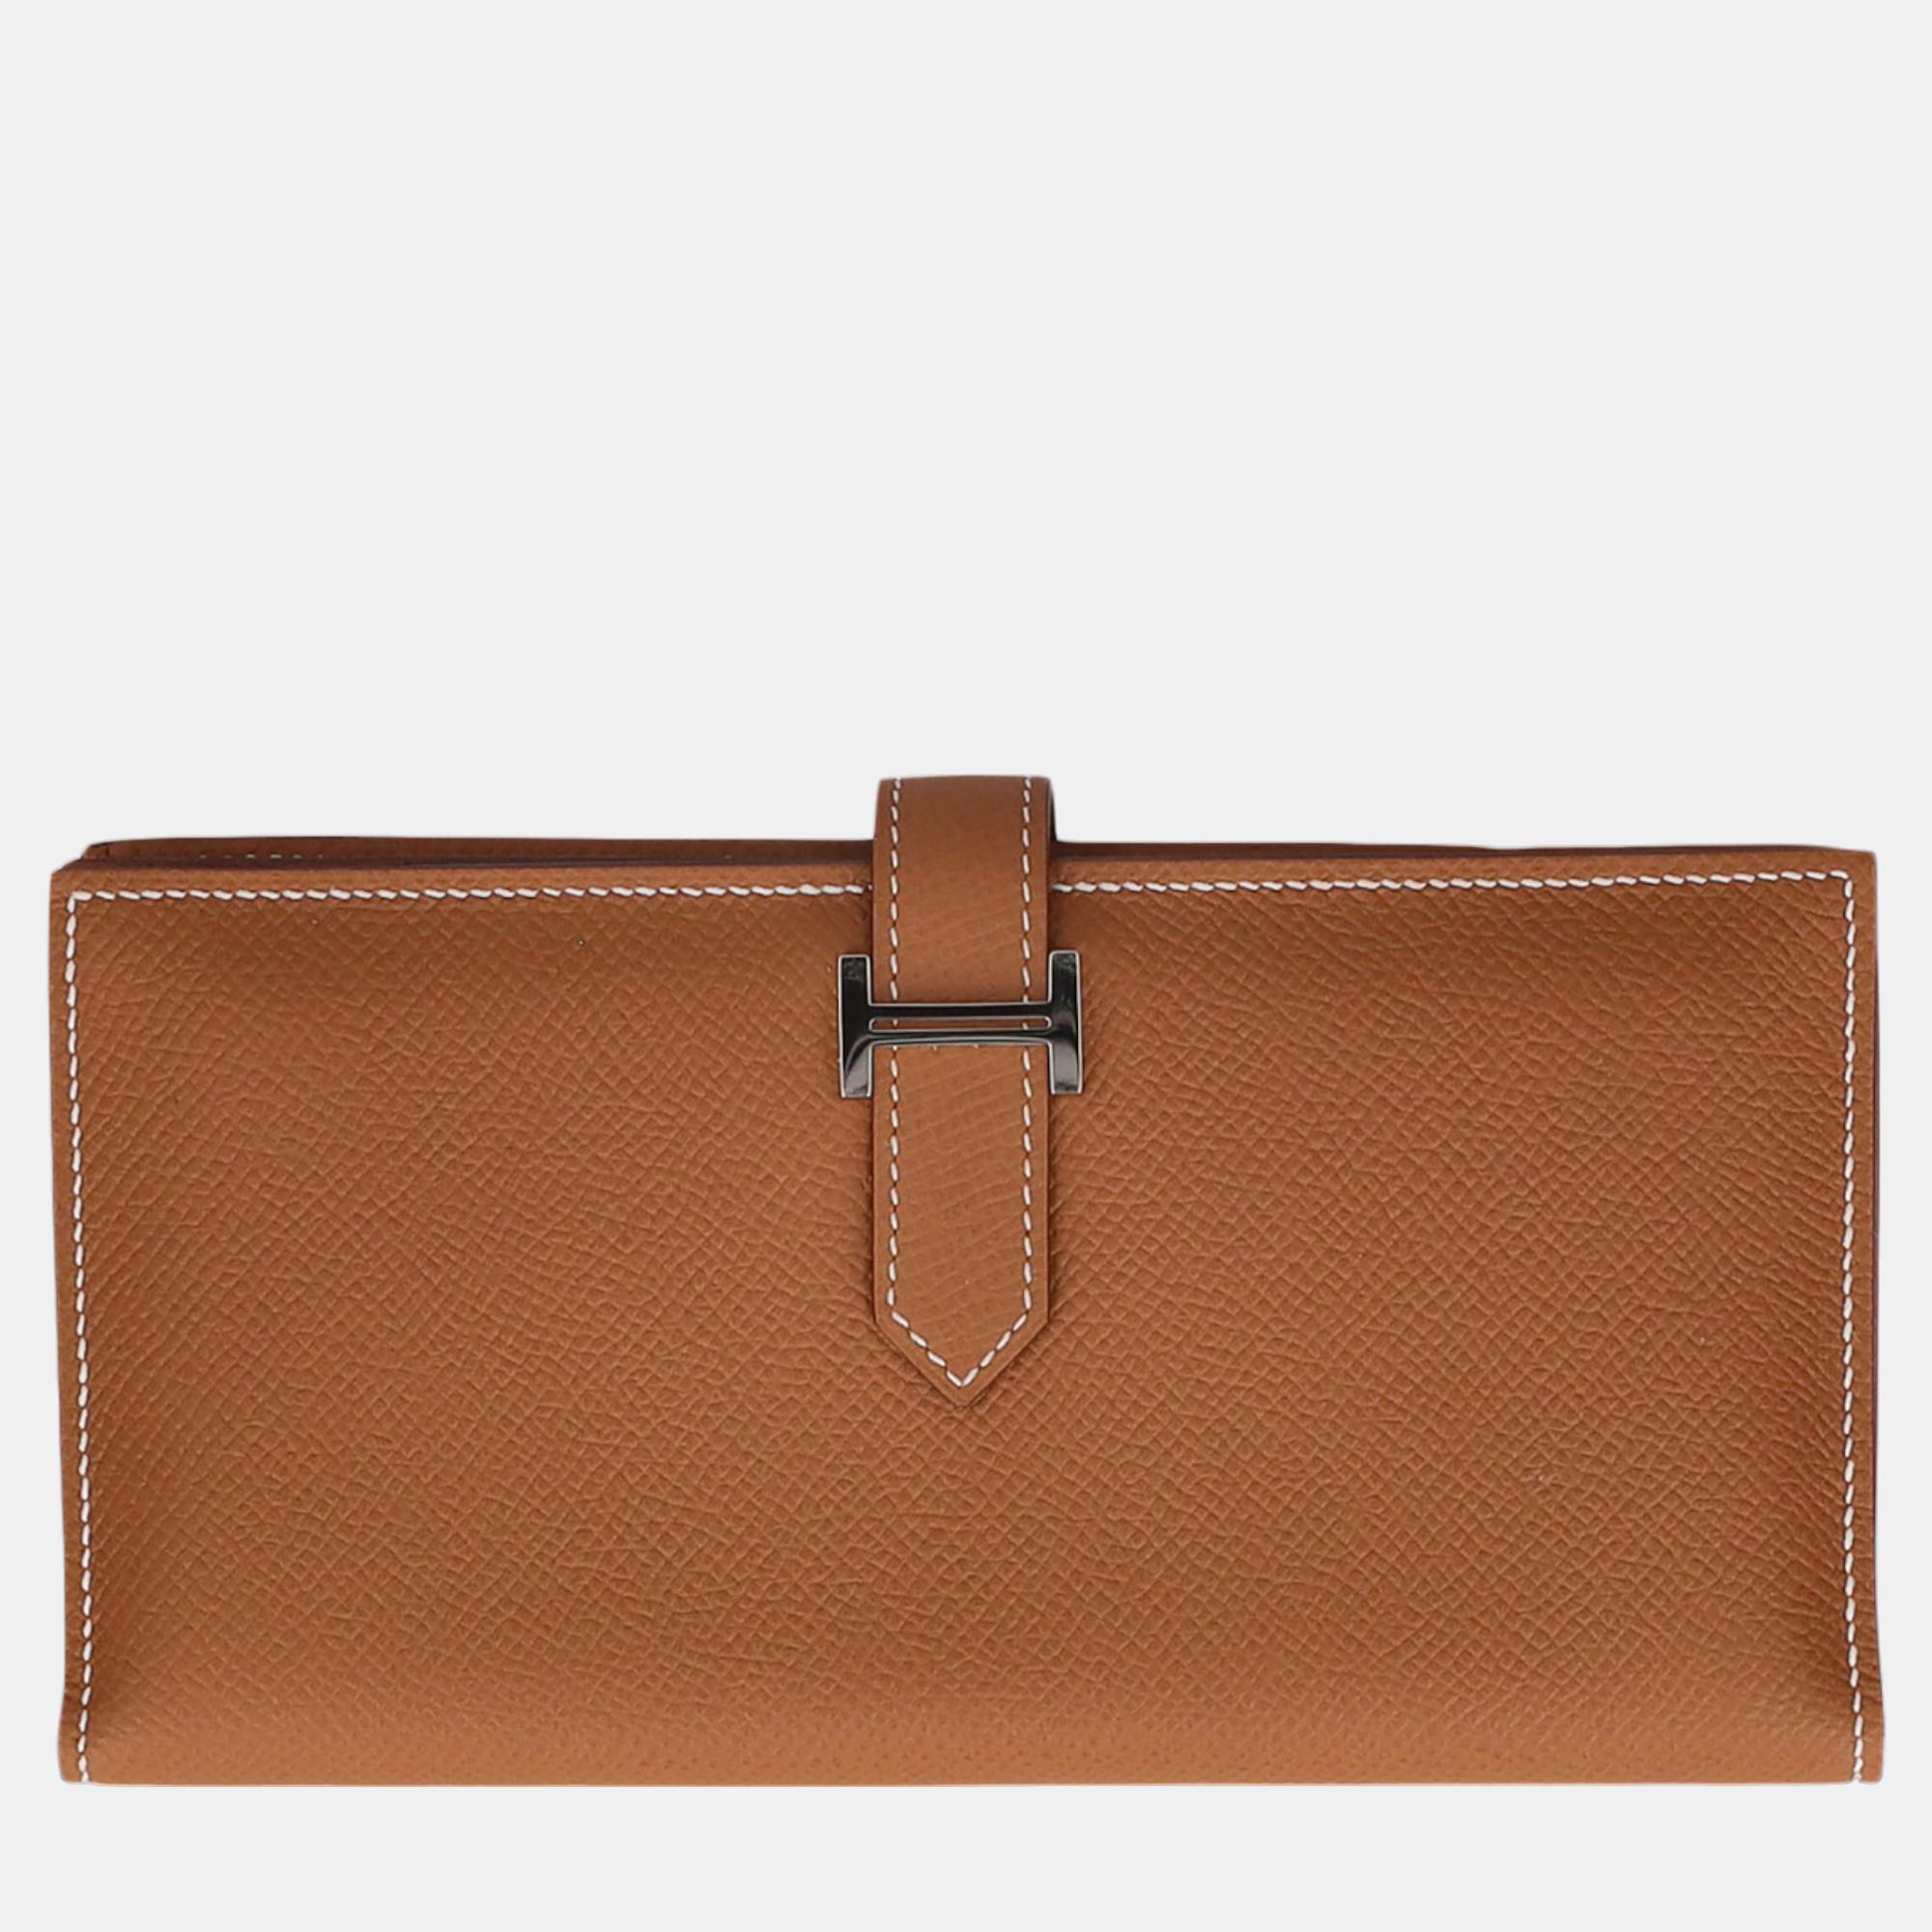 HermÃ¨s Women's Leather Wallet - Beige - One Size